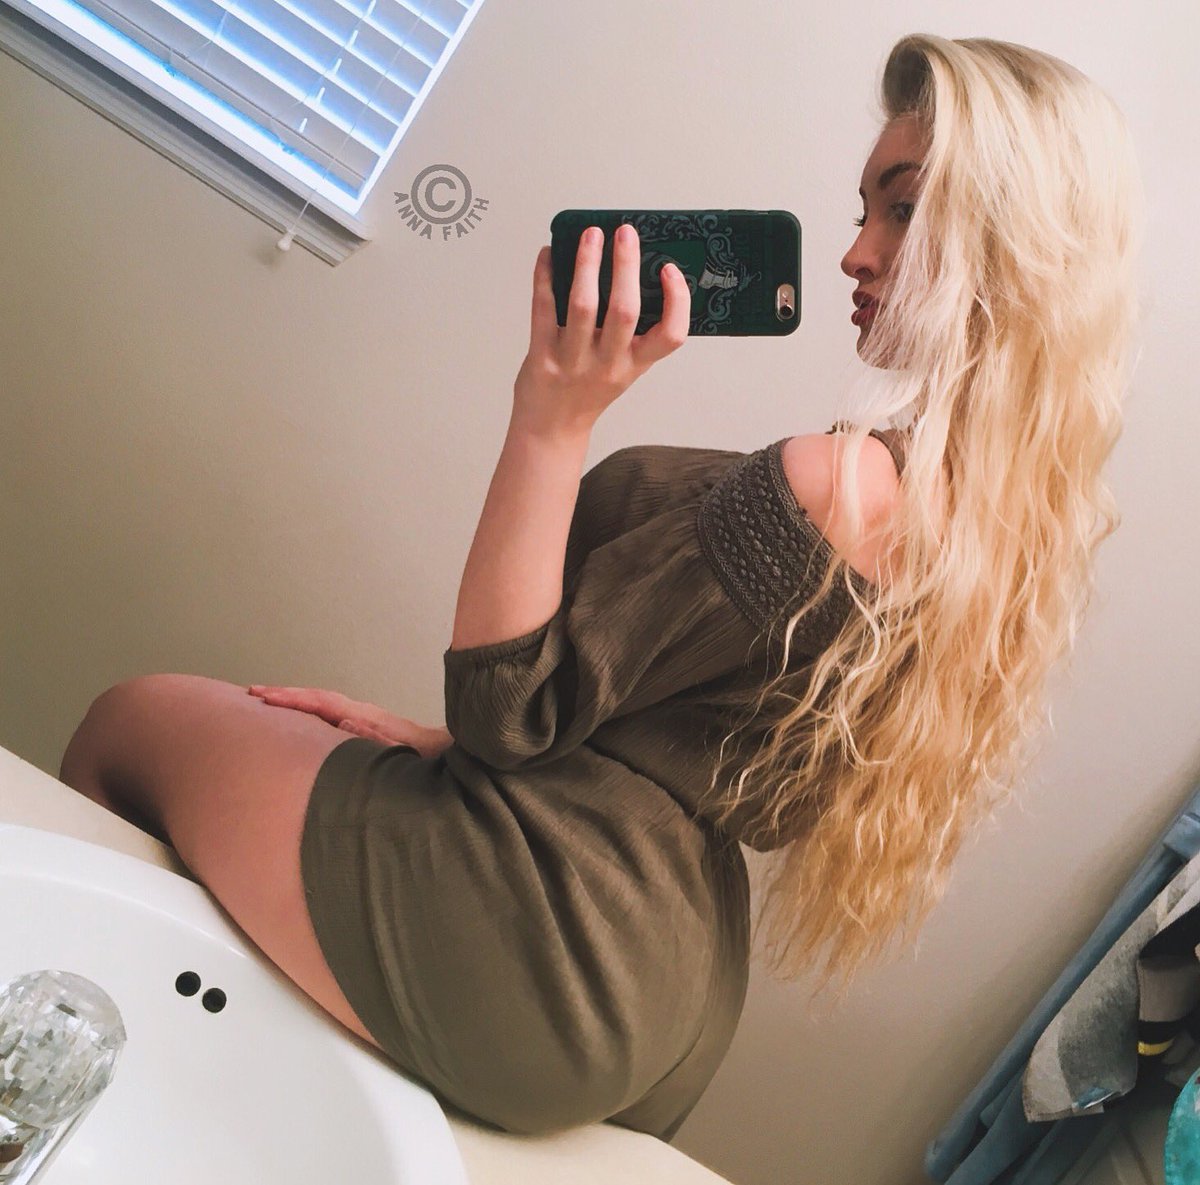 Блондинка в ванной перед большим зеркалом фото